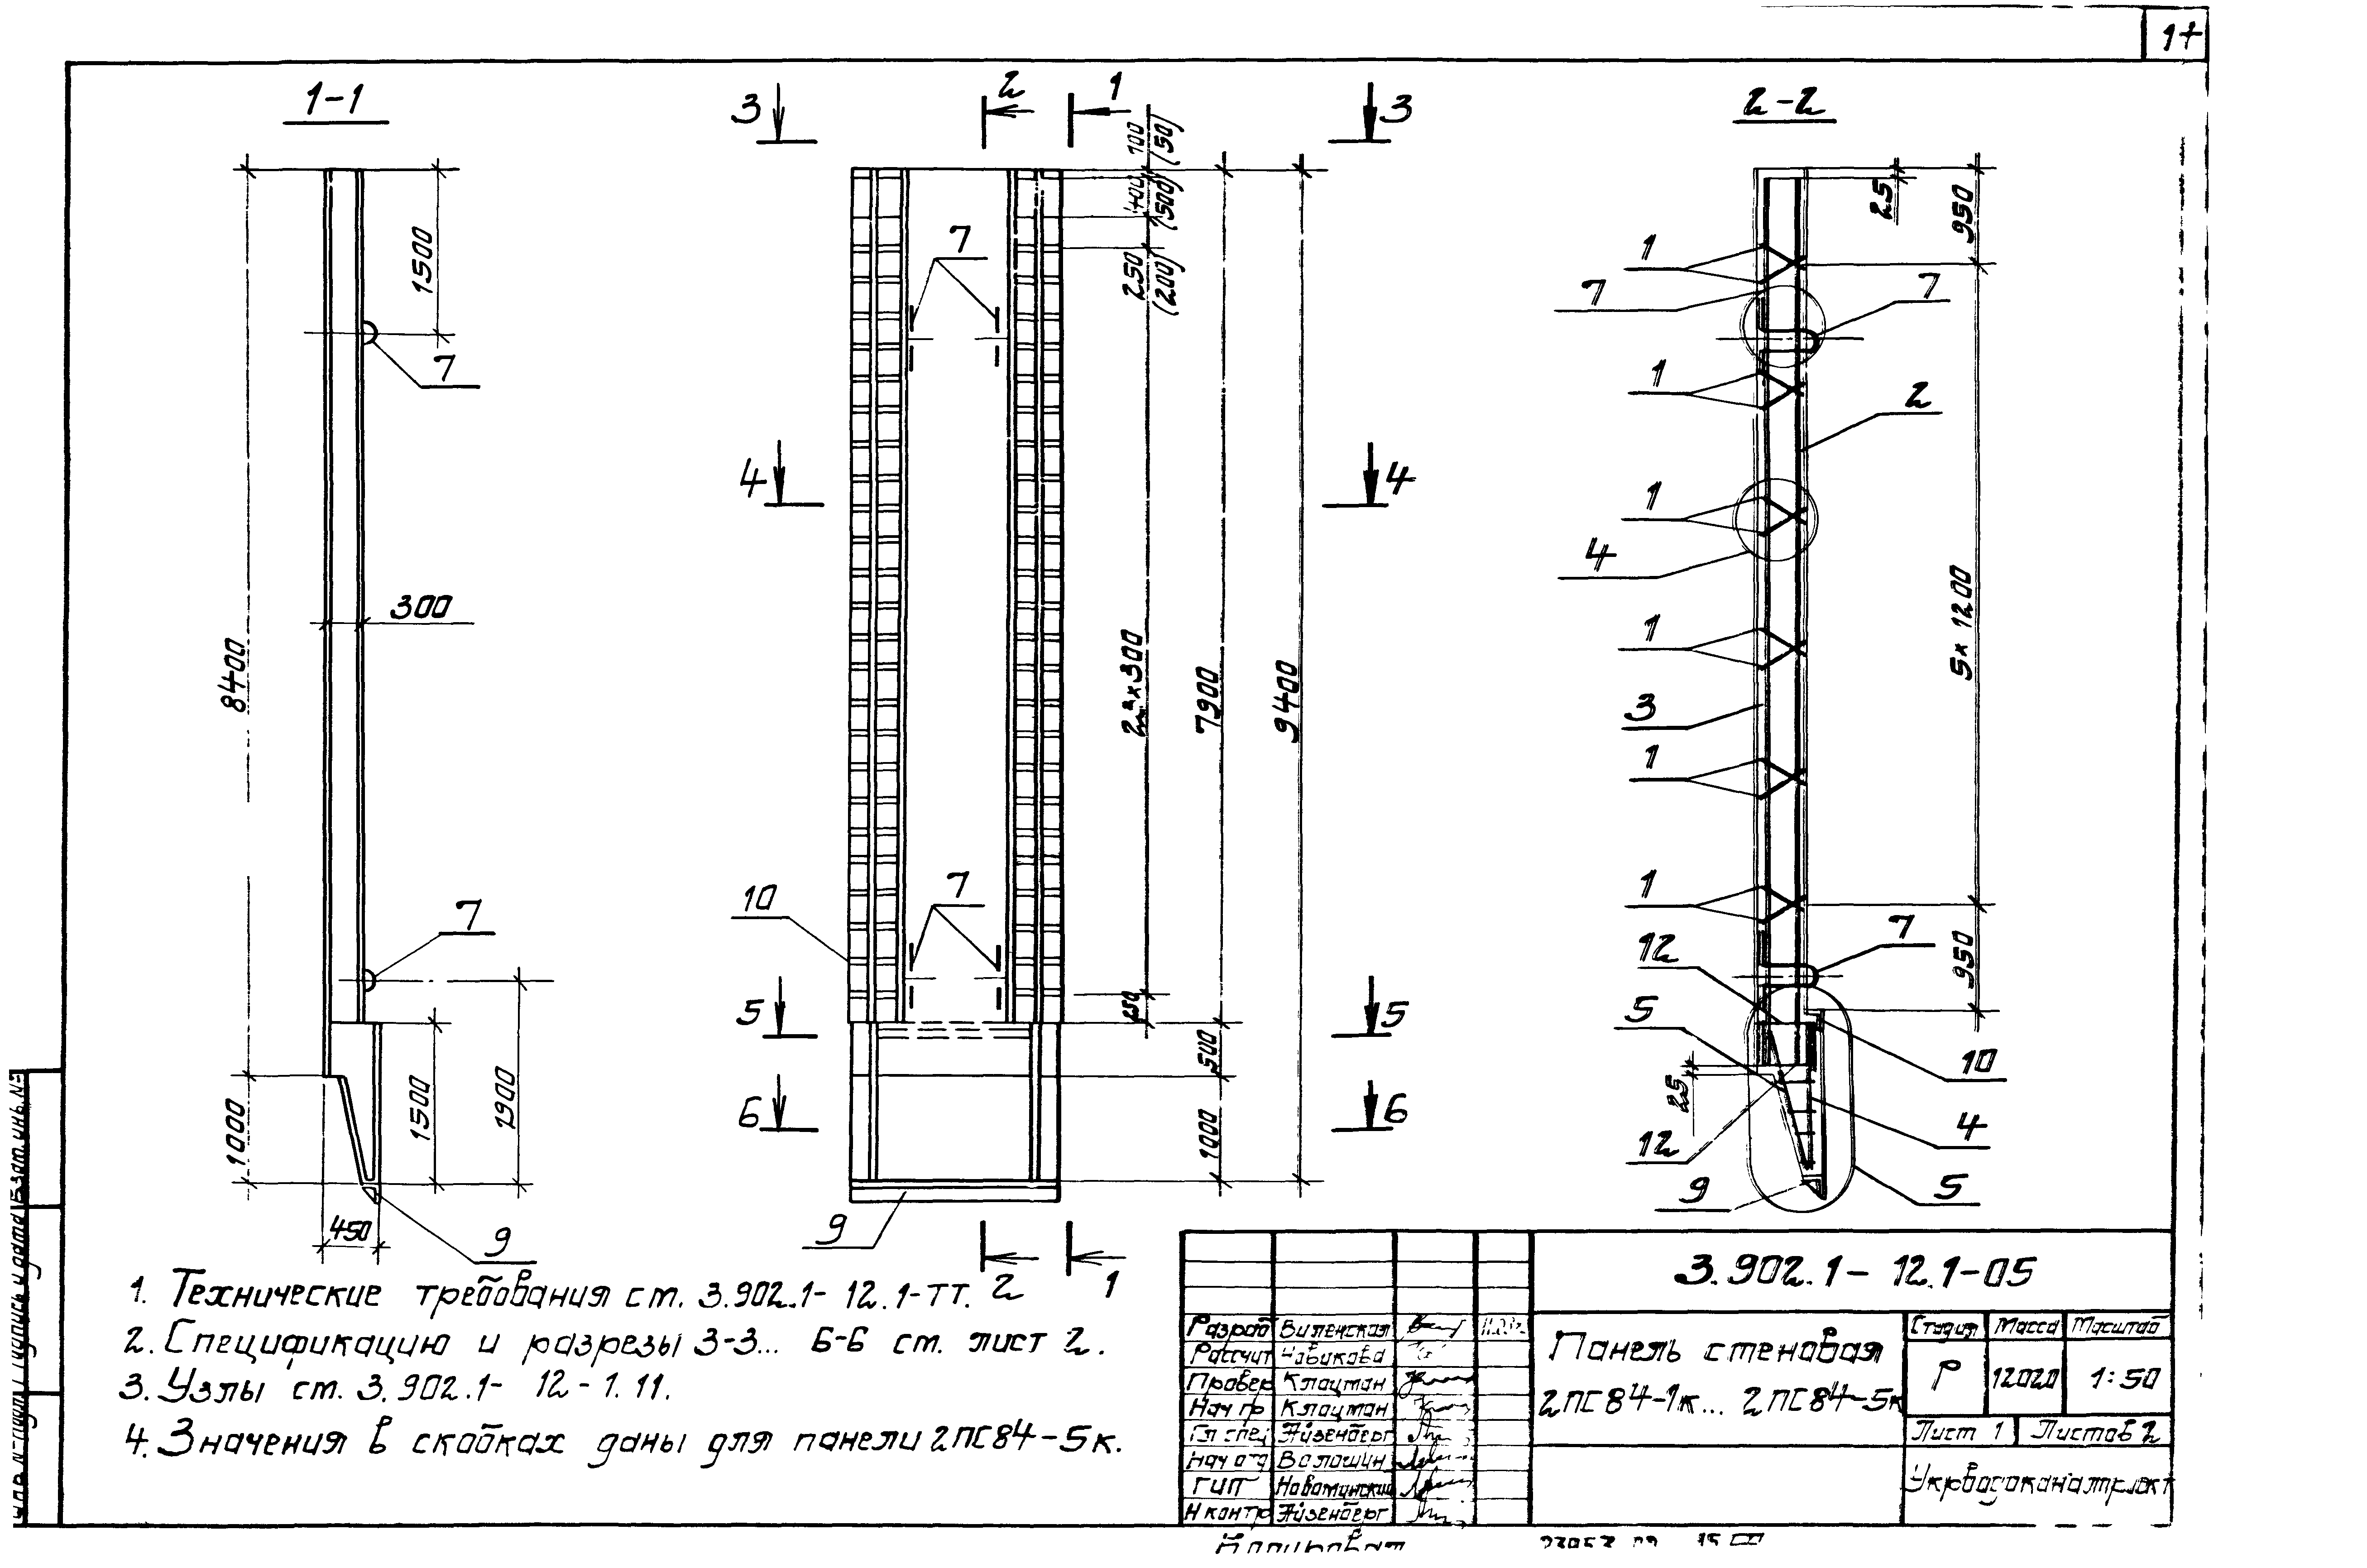 Панель стеновая 2ПС84-4к Серия 3.902.1-12, вып.1